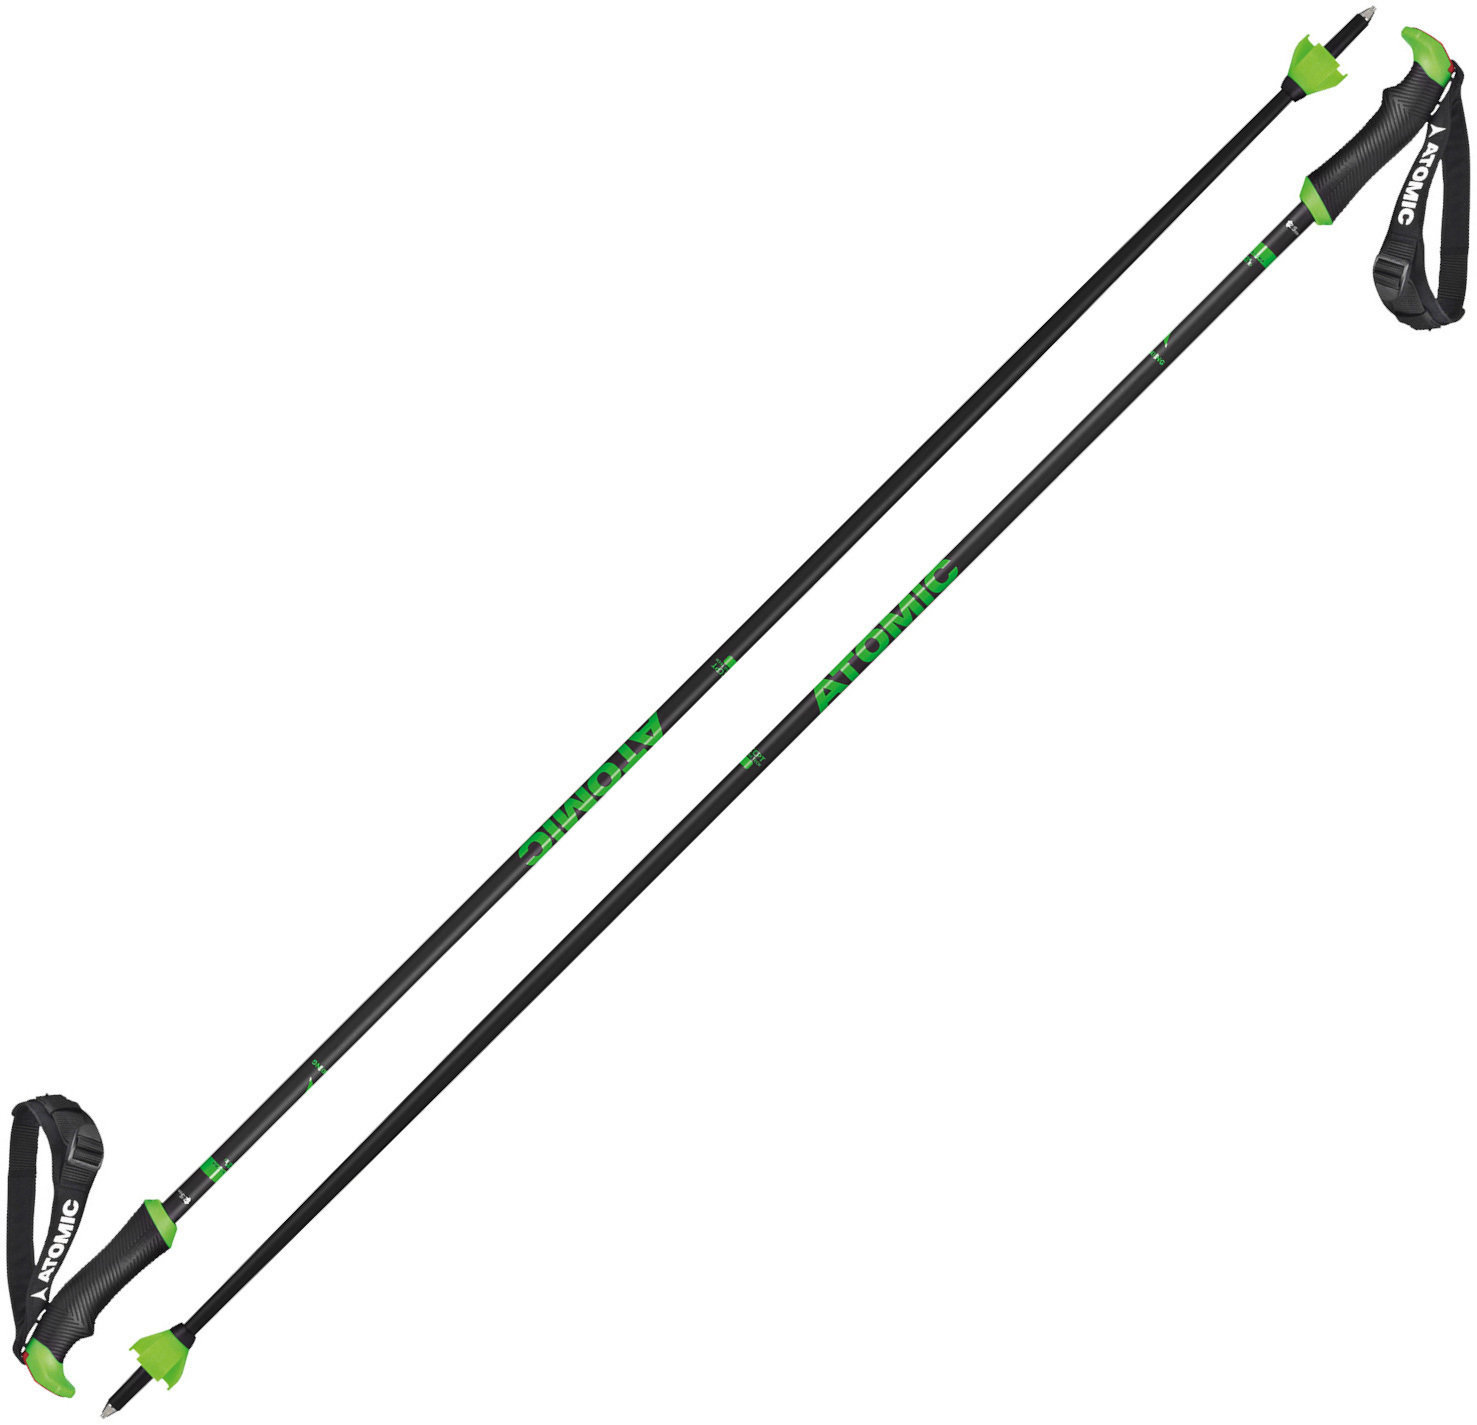 Ski-stokken Atomic Redster X Carbon SQS Grey-Green 120 cm Ski-stokken